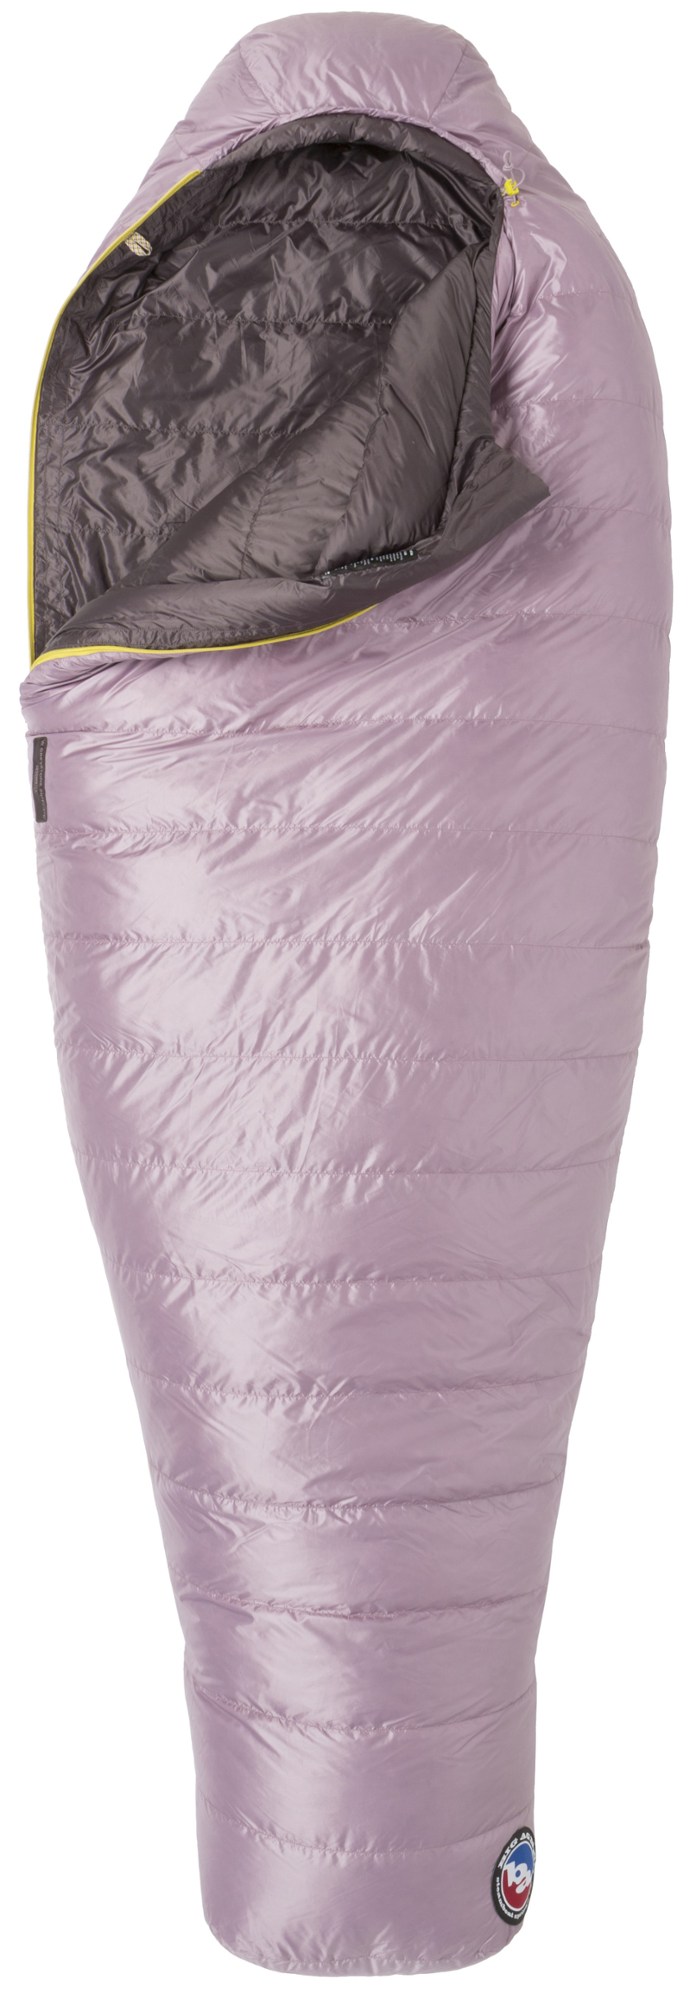 Спальный мешок Greystone 20 — женский Big Agnes, фиолетовый